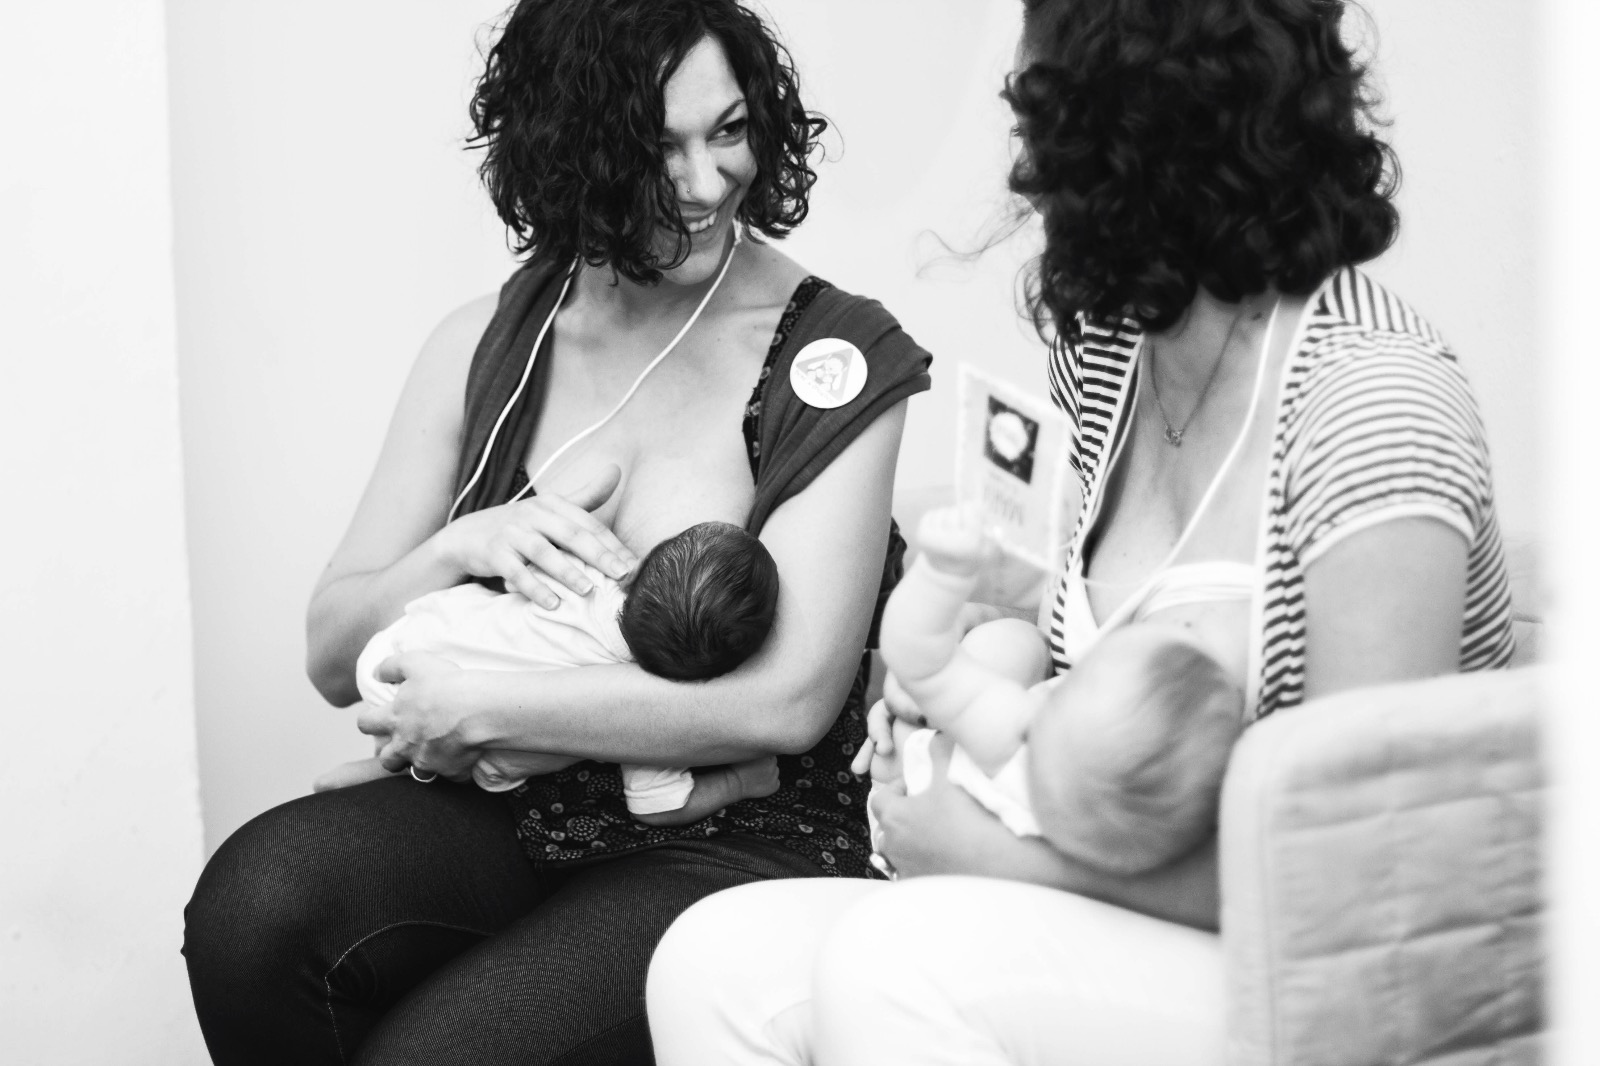 Foto en blanco y negro. Juls dando el pecho al Tritón recién nacido (1 mes) junto con María (La Furgoteta) amamantando a Olimpia. Mirada cómplice y sonrisa entre madres lactantes.